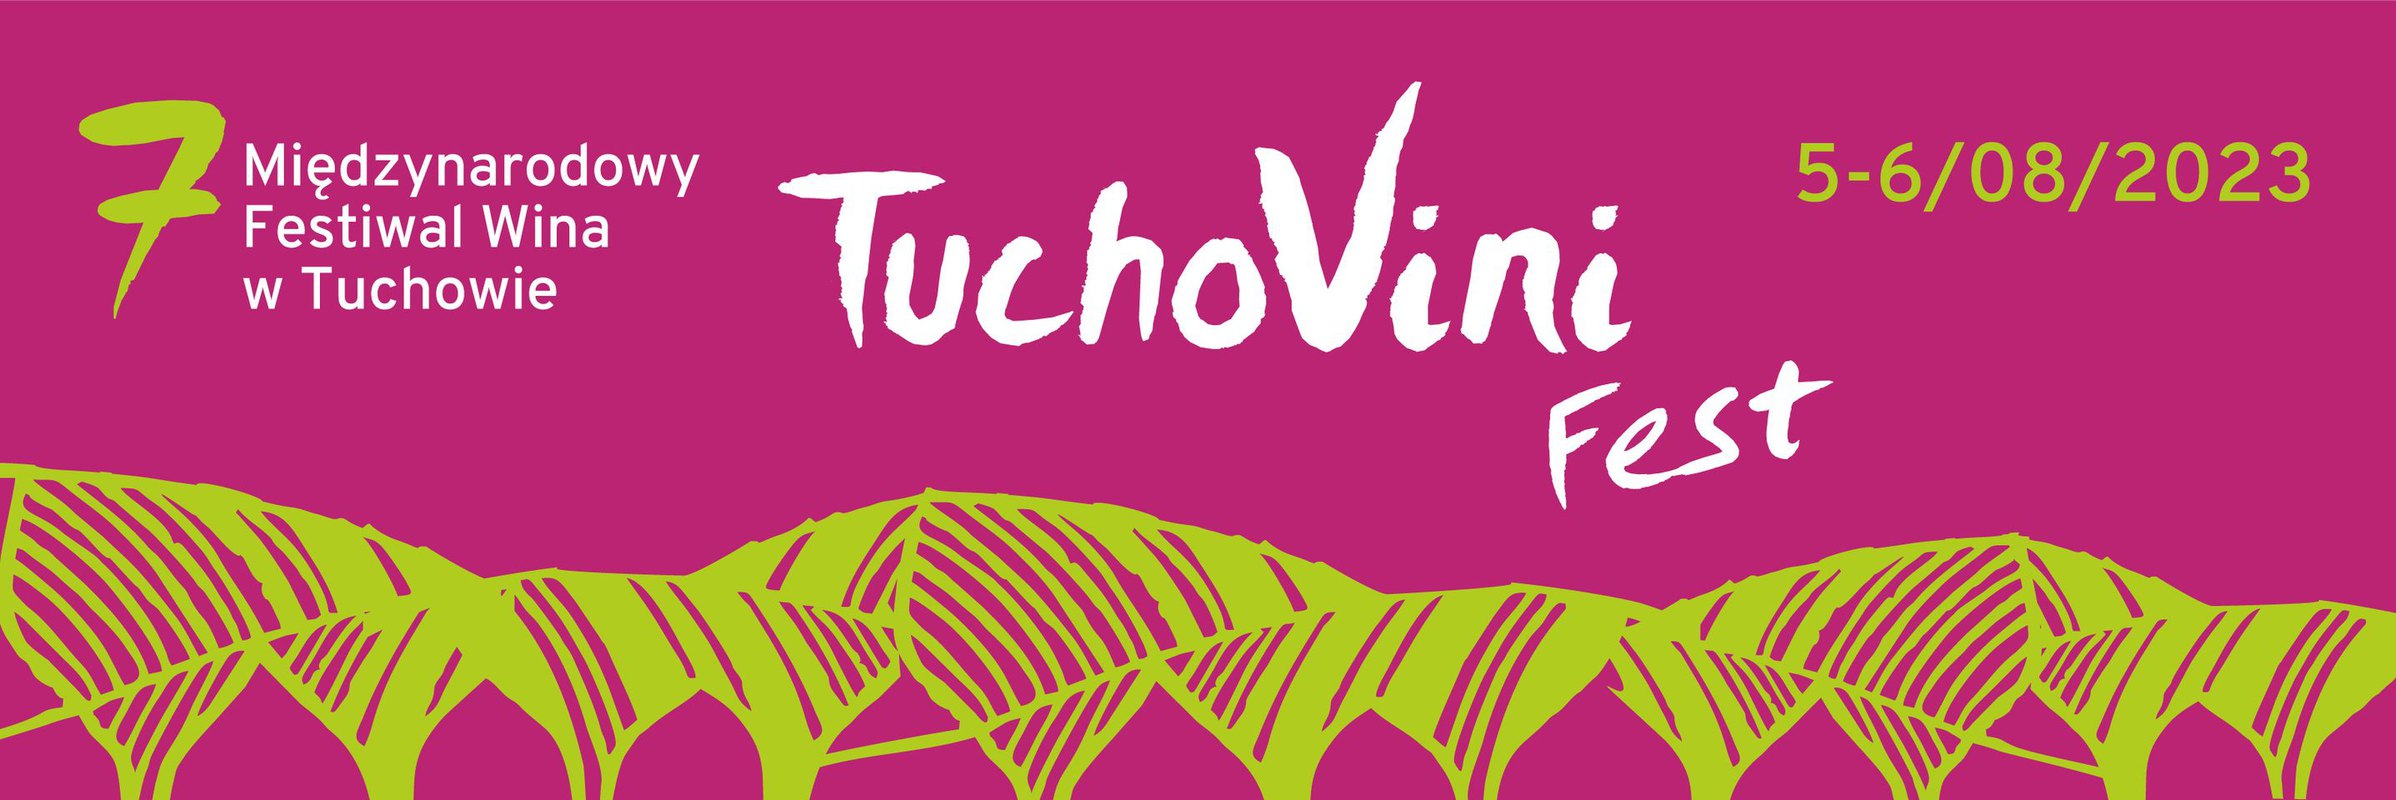 Tuchovinifest 2023